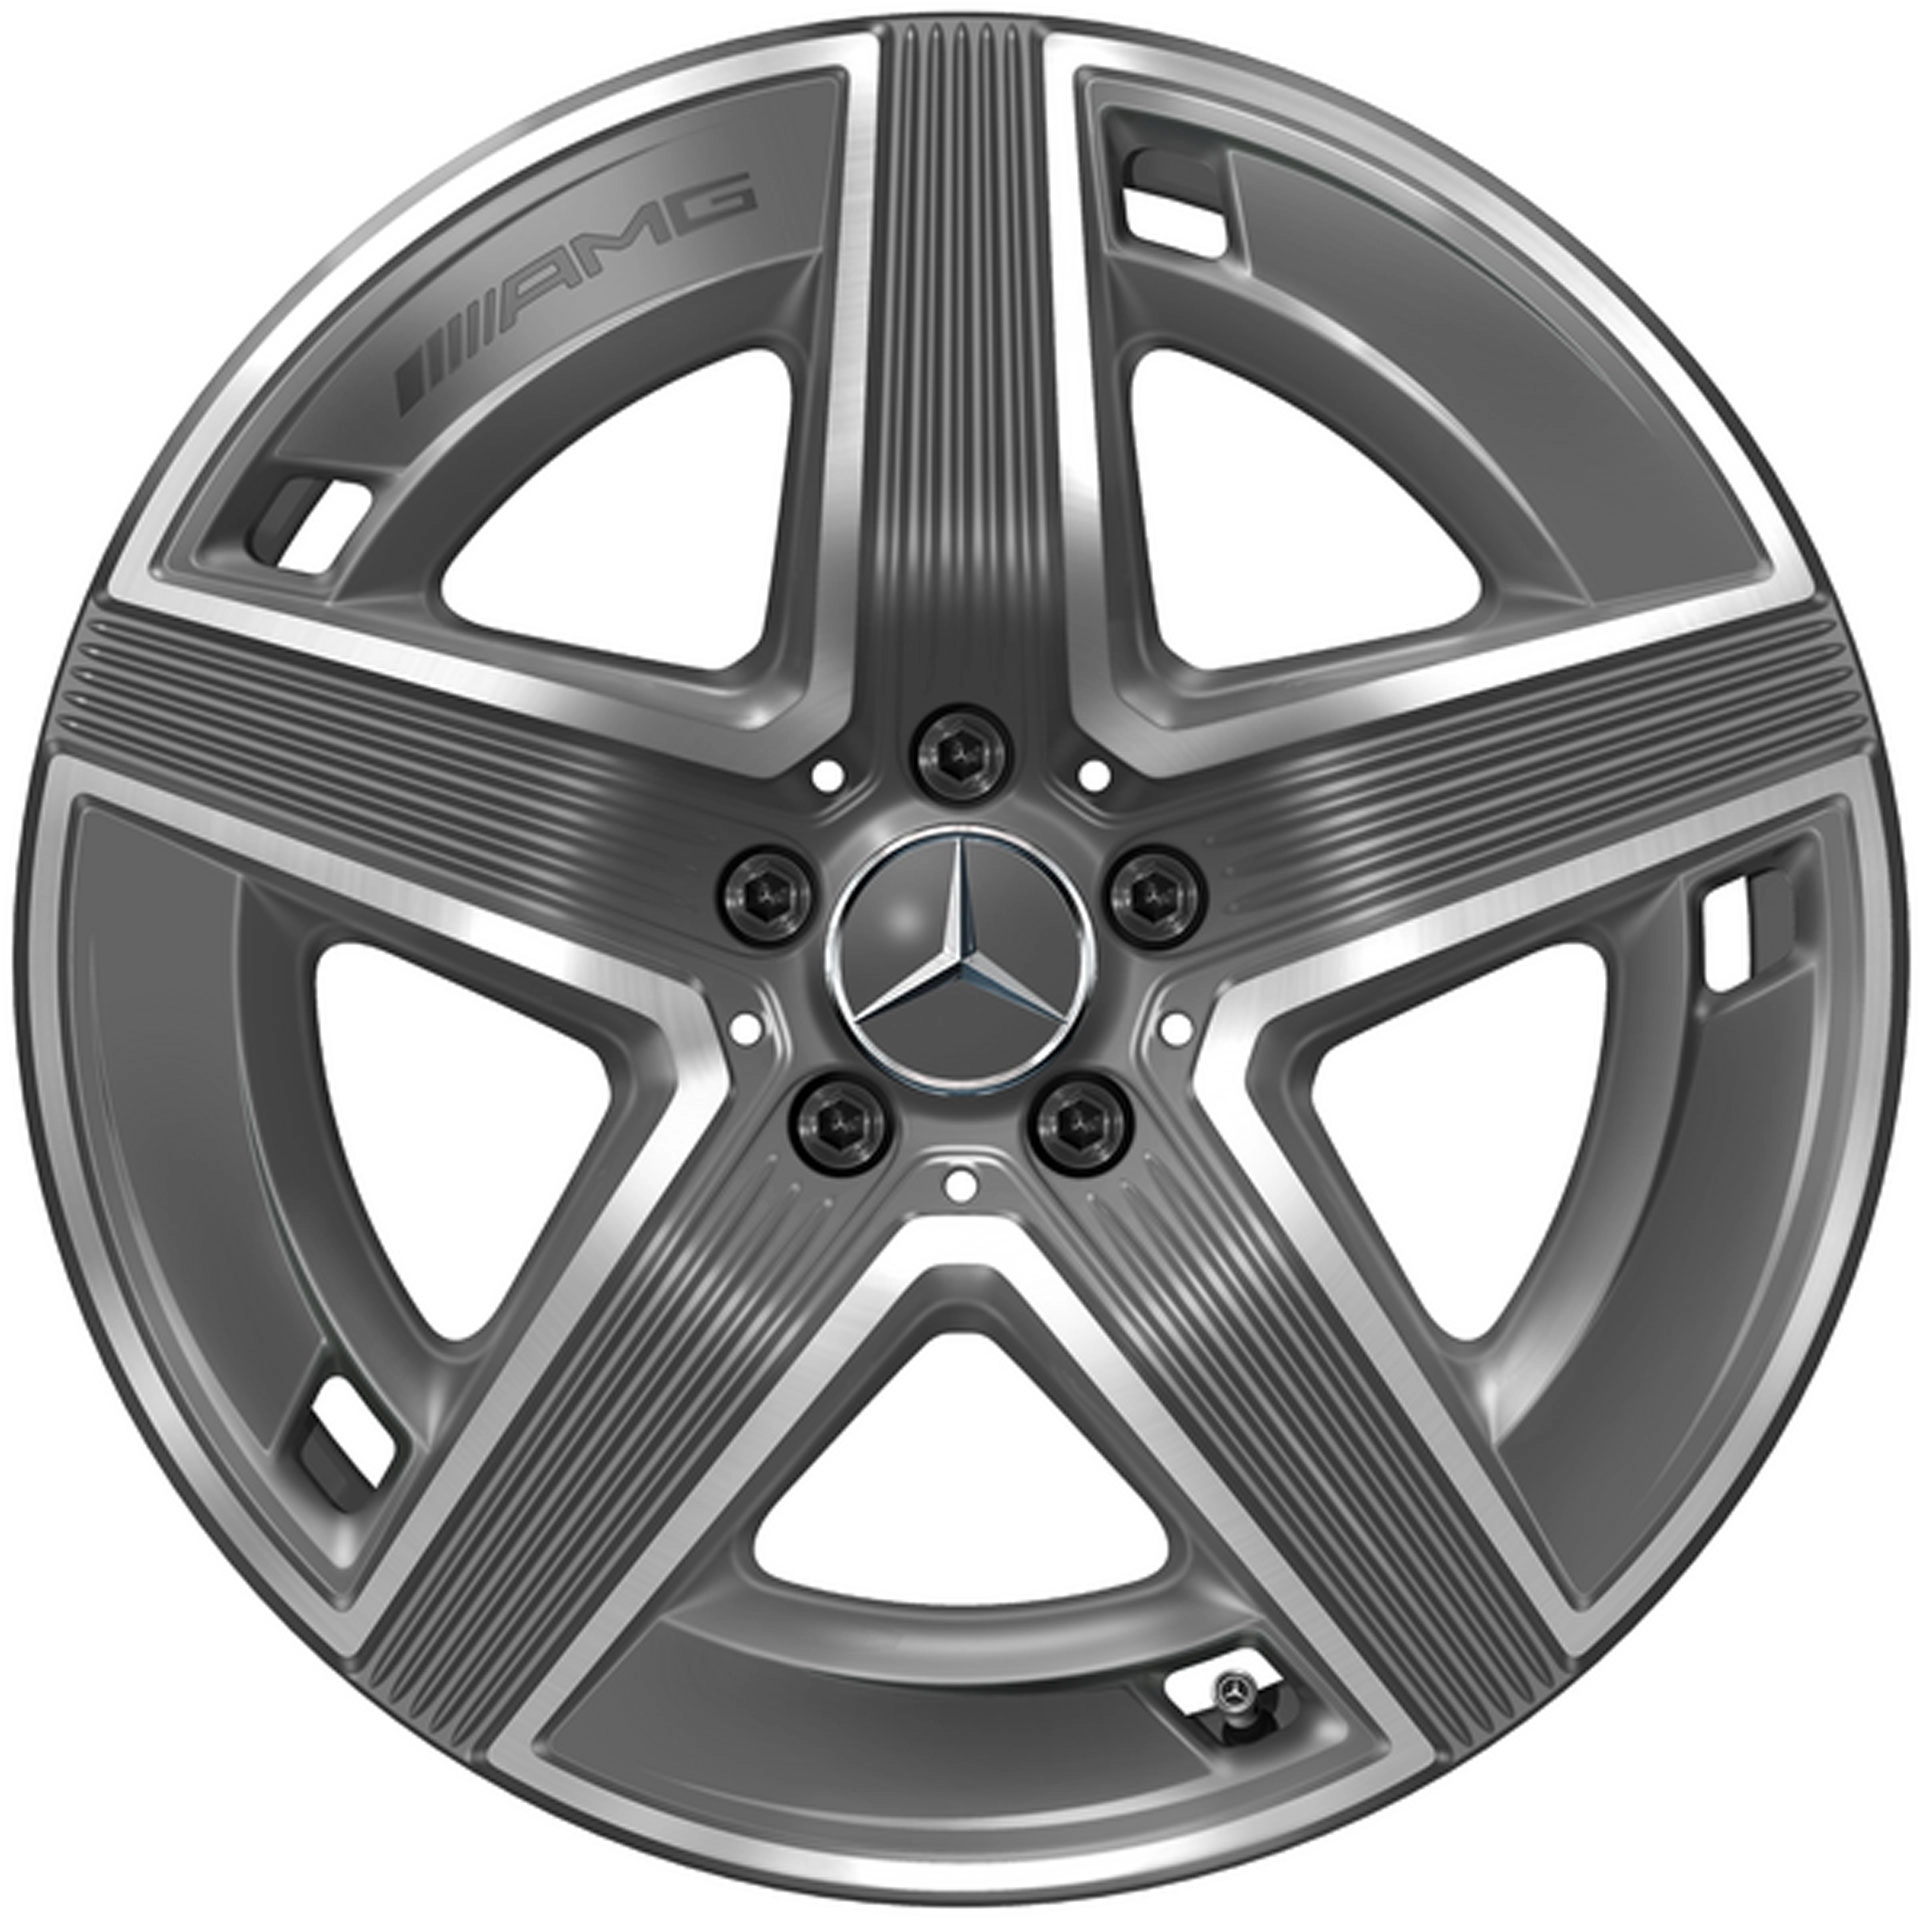 Mercedes-AMG 5-Speichen-Rad 19 Zoll Leichtmetallfelge GLC X254 grau glanzgedreht A25440105007Y51